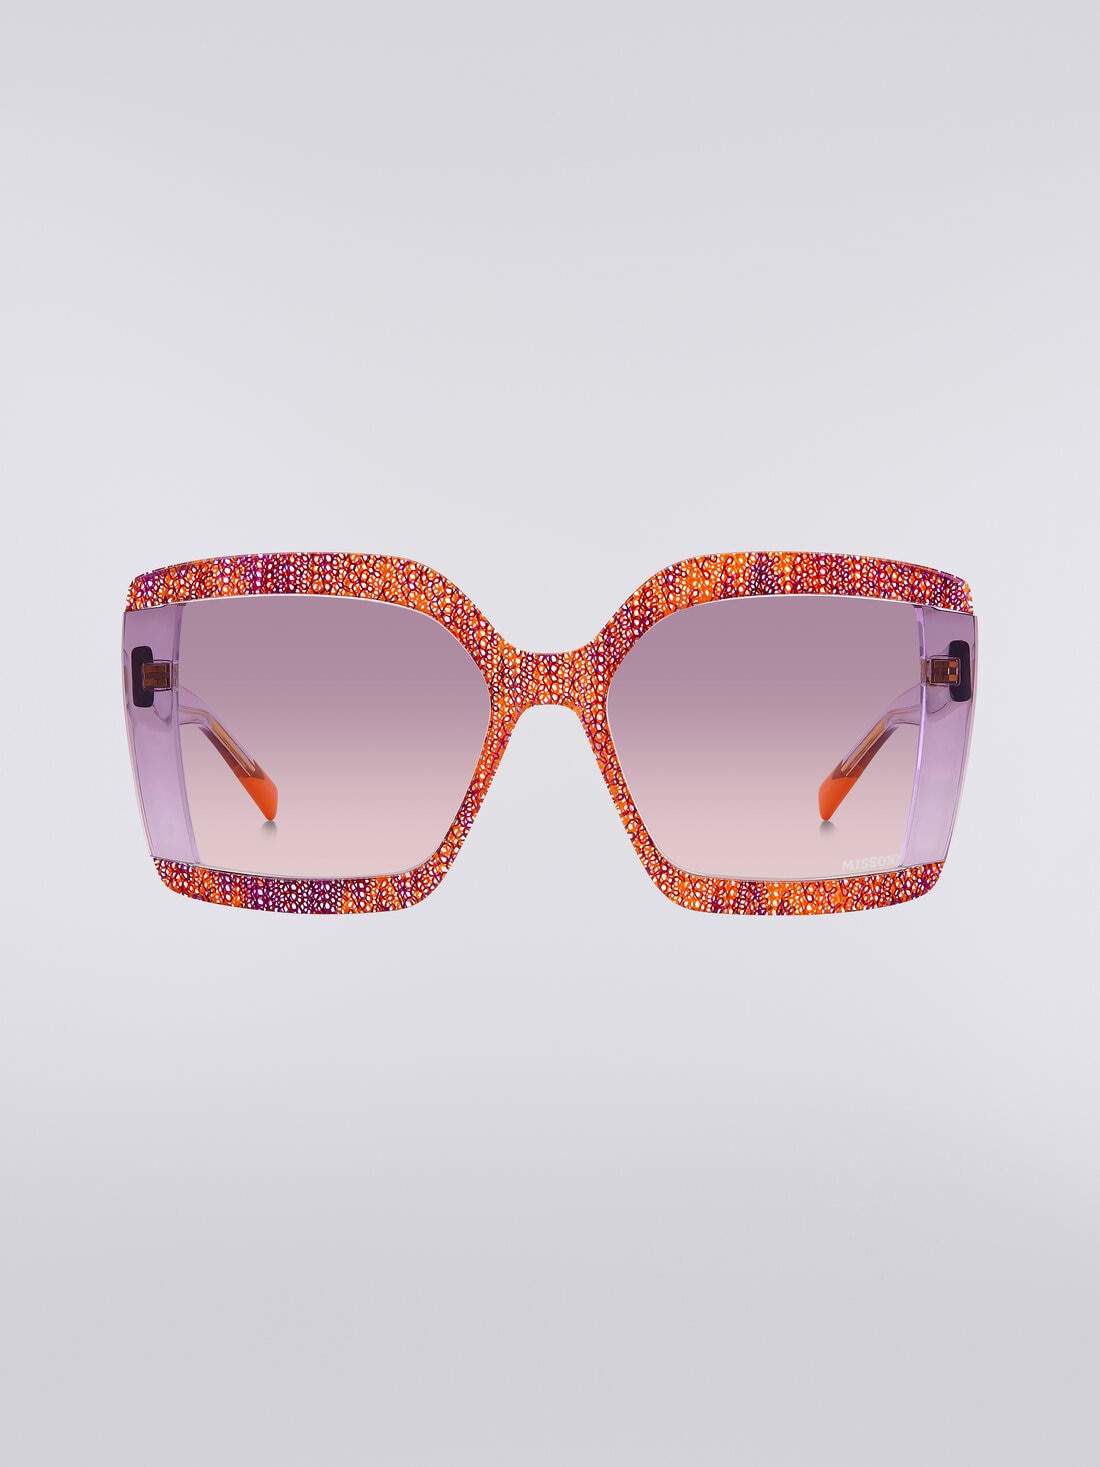 Gafas de sol cuadradas con inserciones de tejido, Multicolor  - 8053147194974 - 0